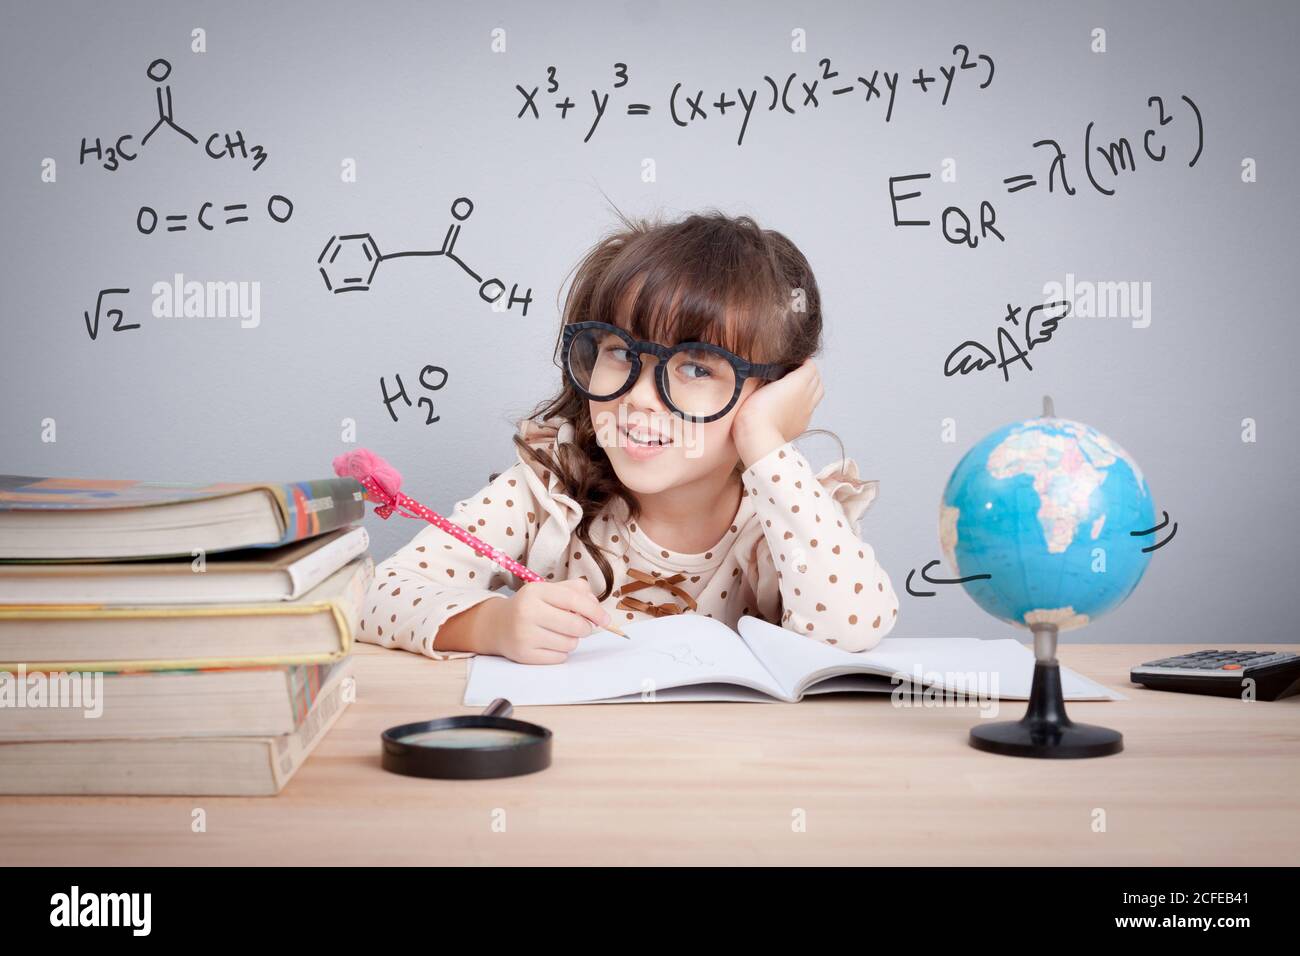 concept d'éducation. petite fille mignonne à l'école heureuse de faire des devoirs. équations mathématiques et formule chimique en arrière-plan Banque D'Images